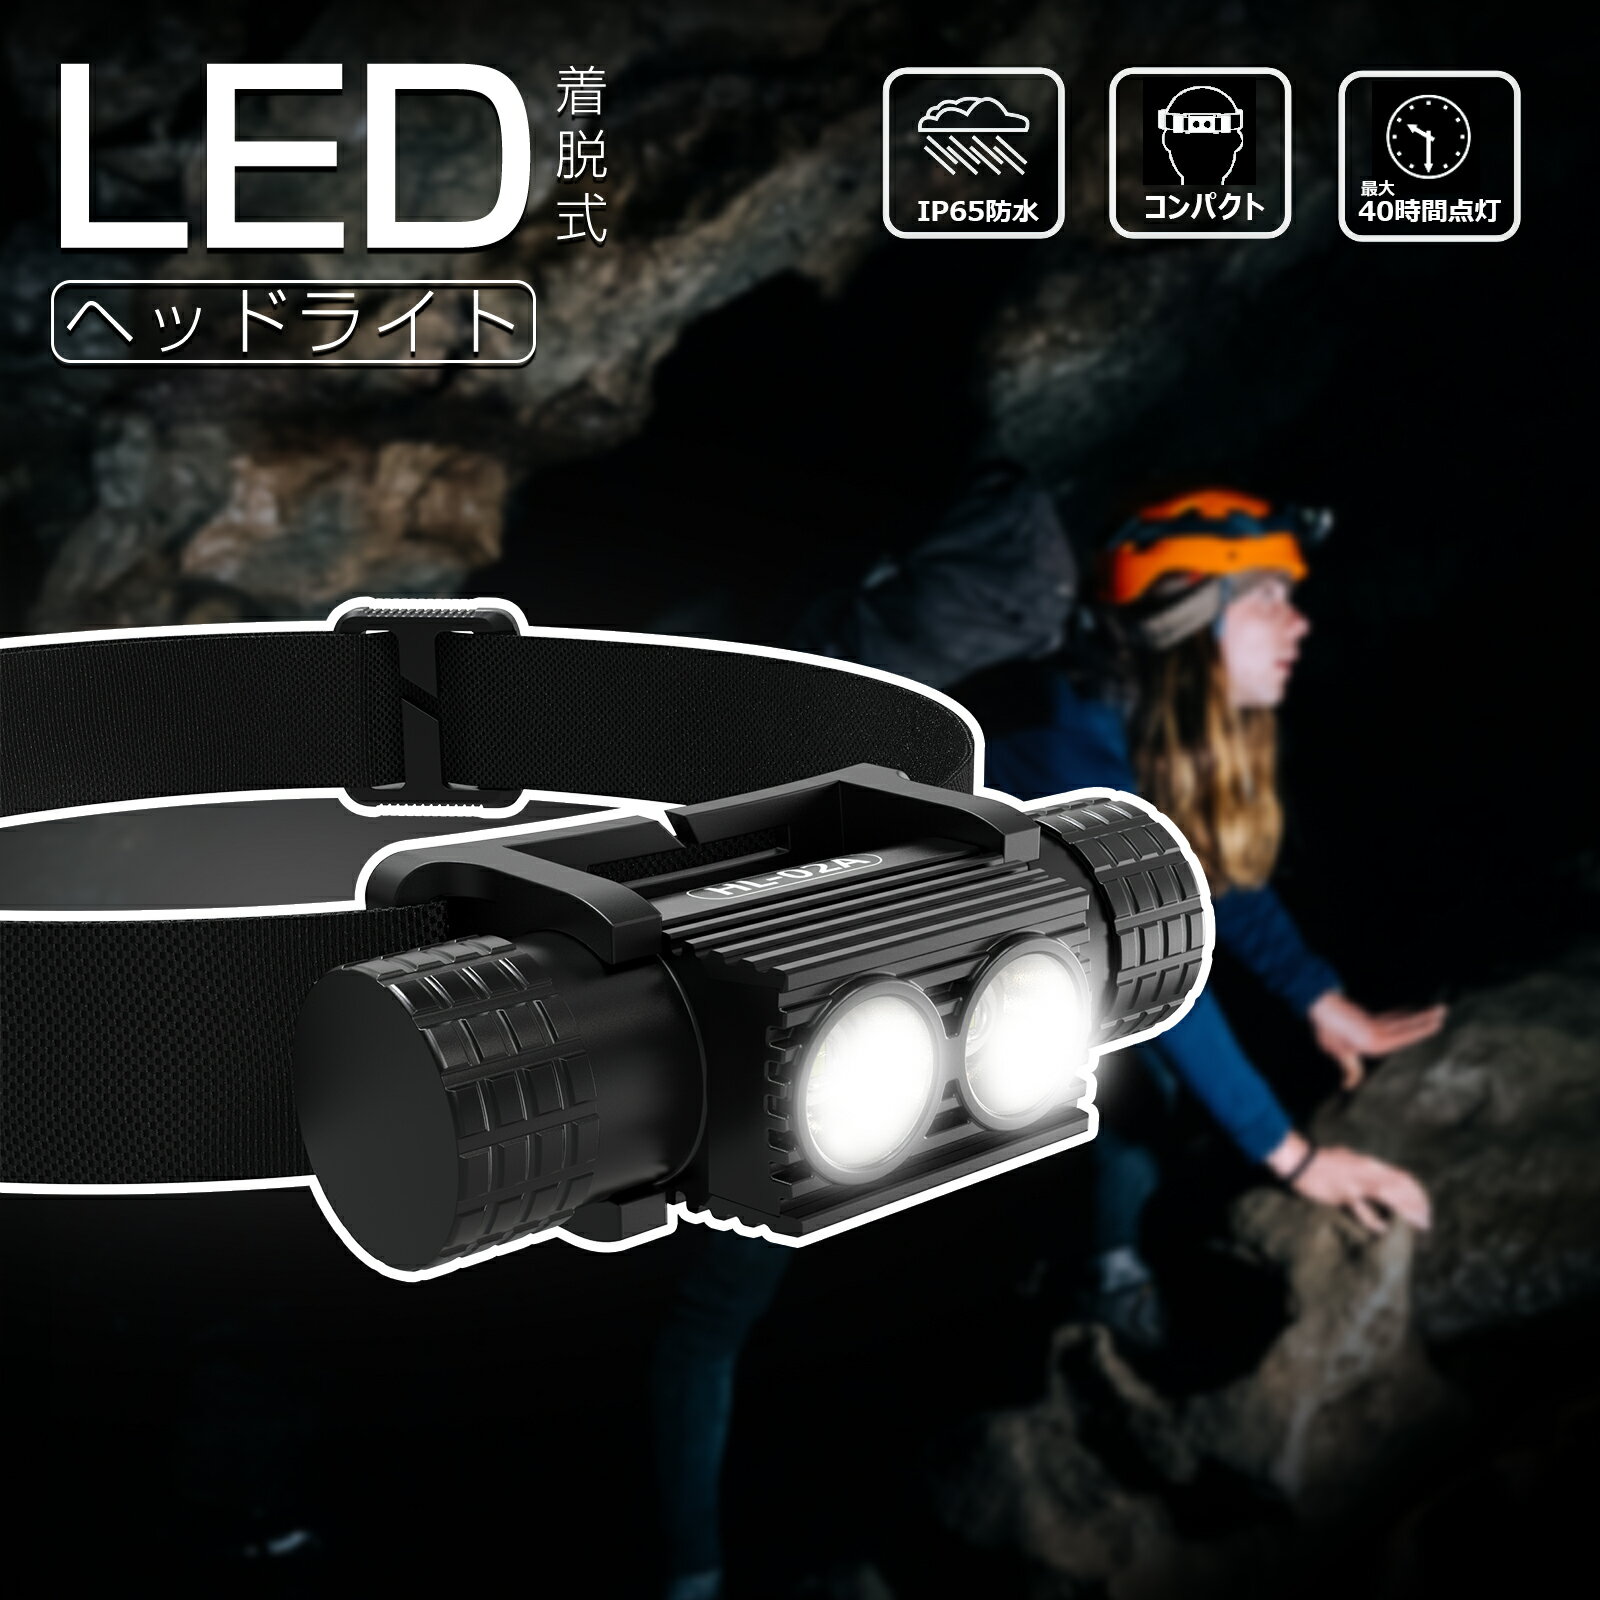 【10%OFFクーポンあり】GOODGOODS ヘッドライト 充電式 10W 855lm 強力 着脱式 LED 充電式ヘッドライト IP65 防水 ラ…